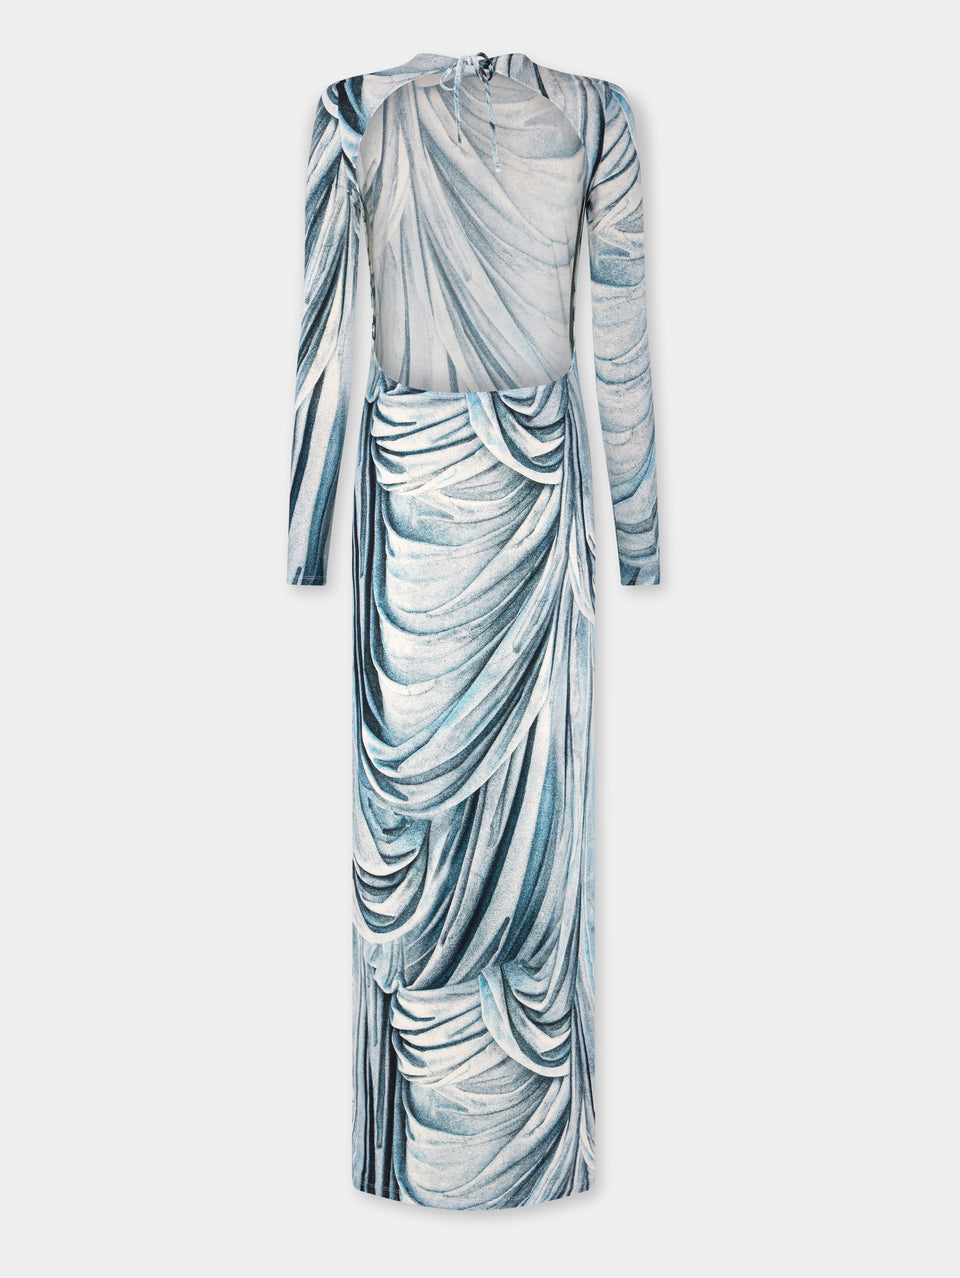 Second-skin dress in trompe l'œil blue statue print